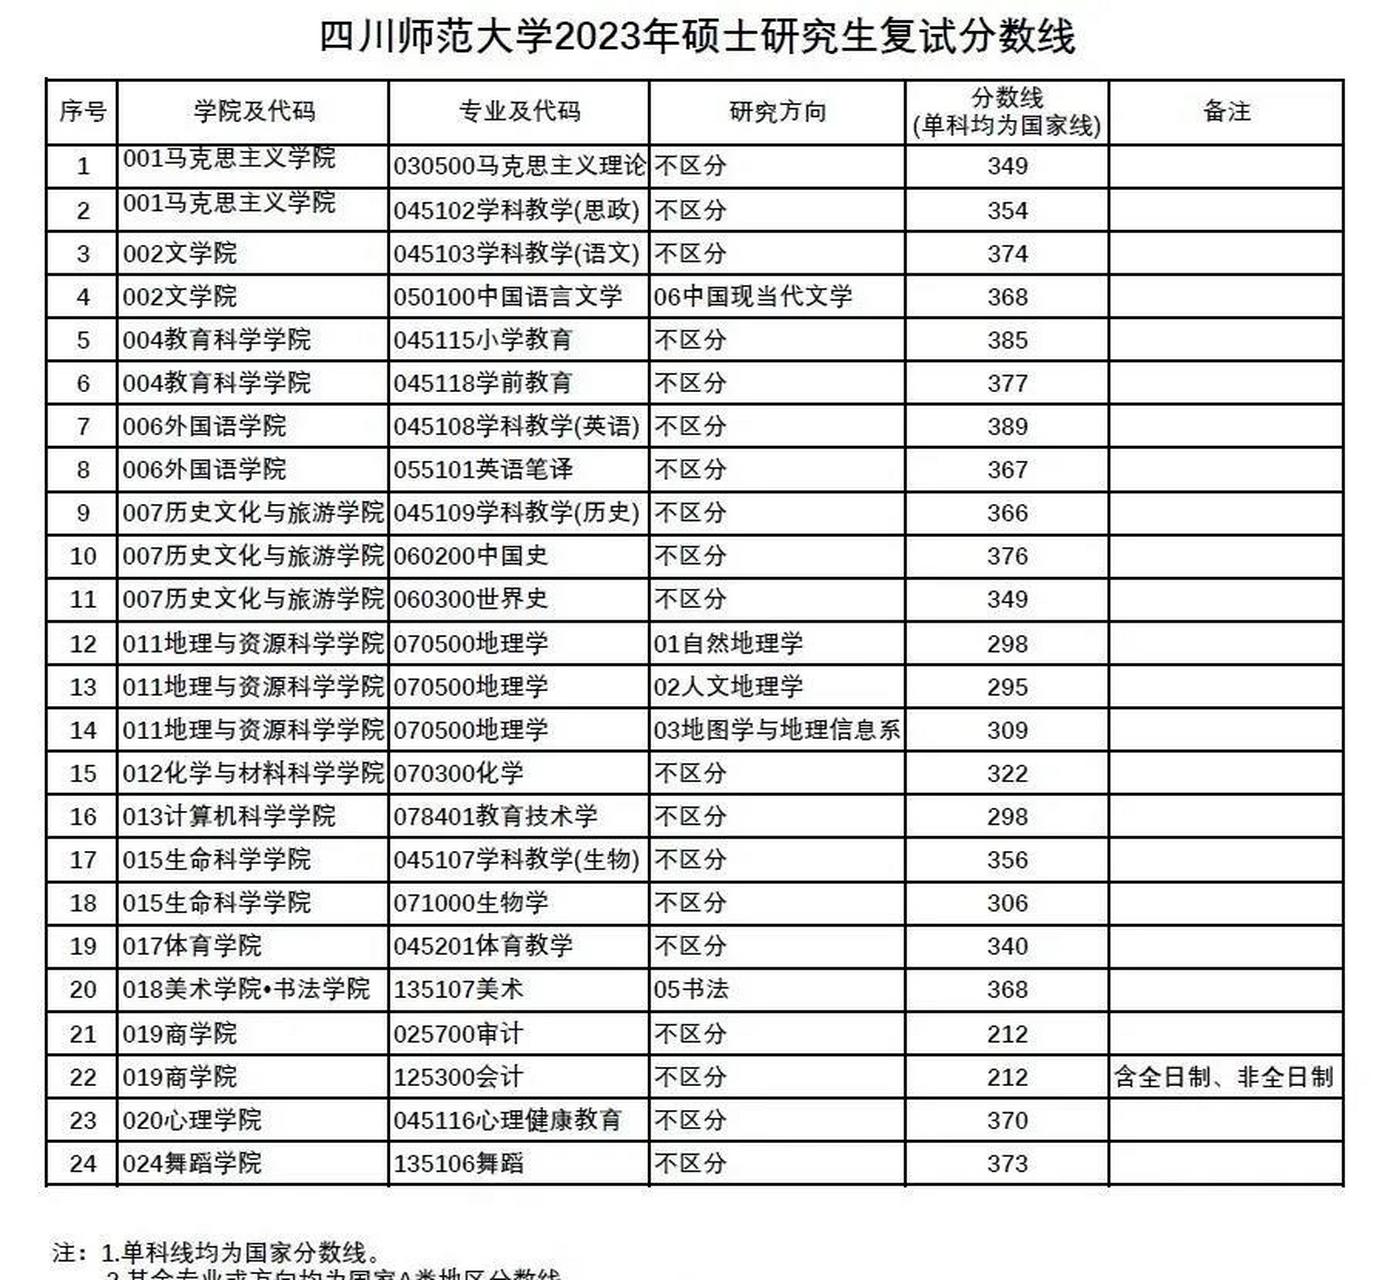 四川师范大学2023年硕士研究生招生考试复试分数线公布了,详见下表!